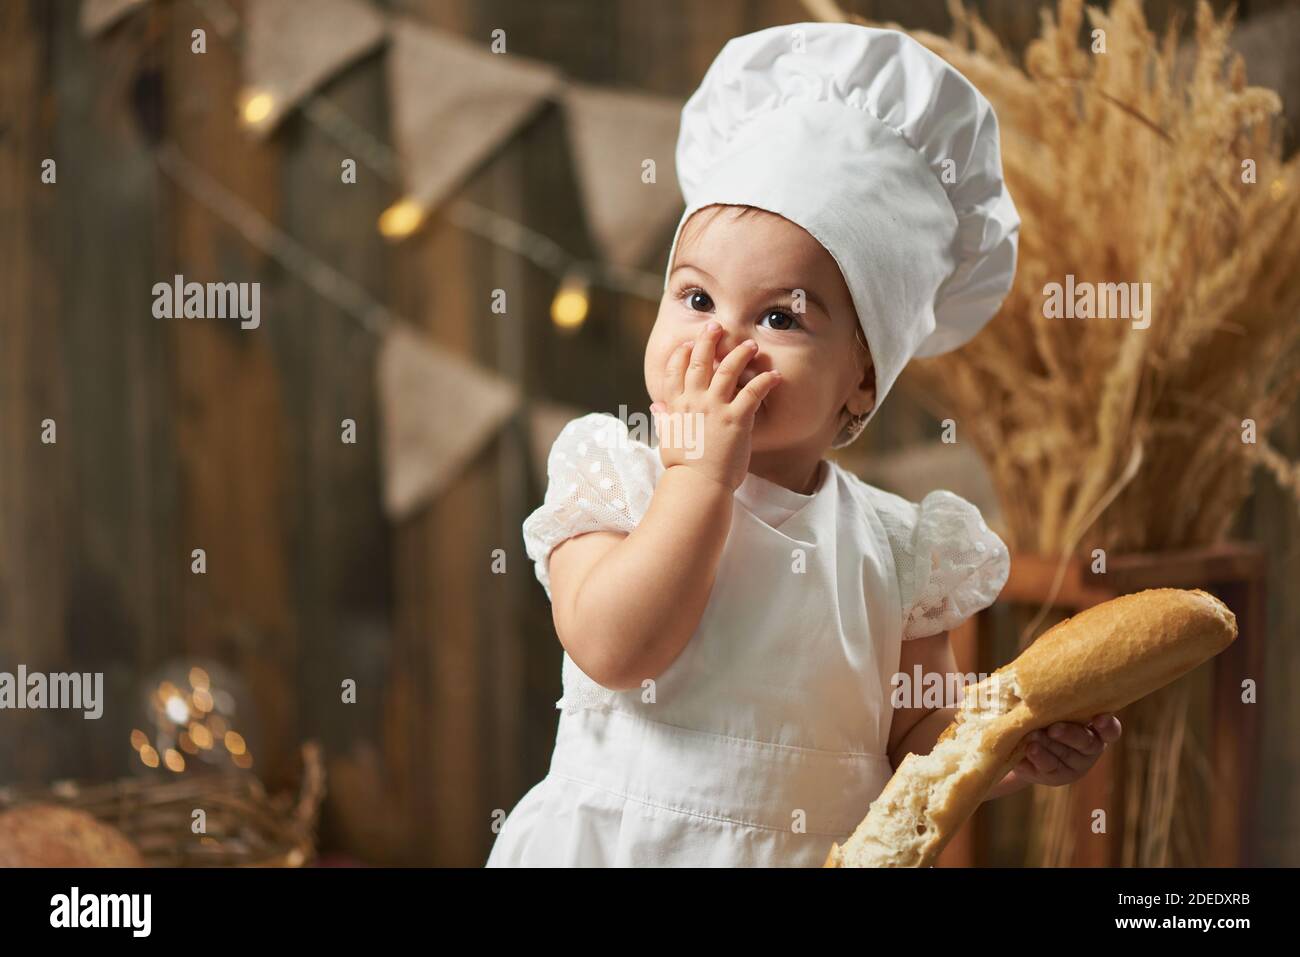 Une petite fille baker mange du pain et la ferme bouche Banque D'Images